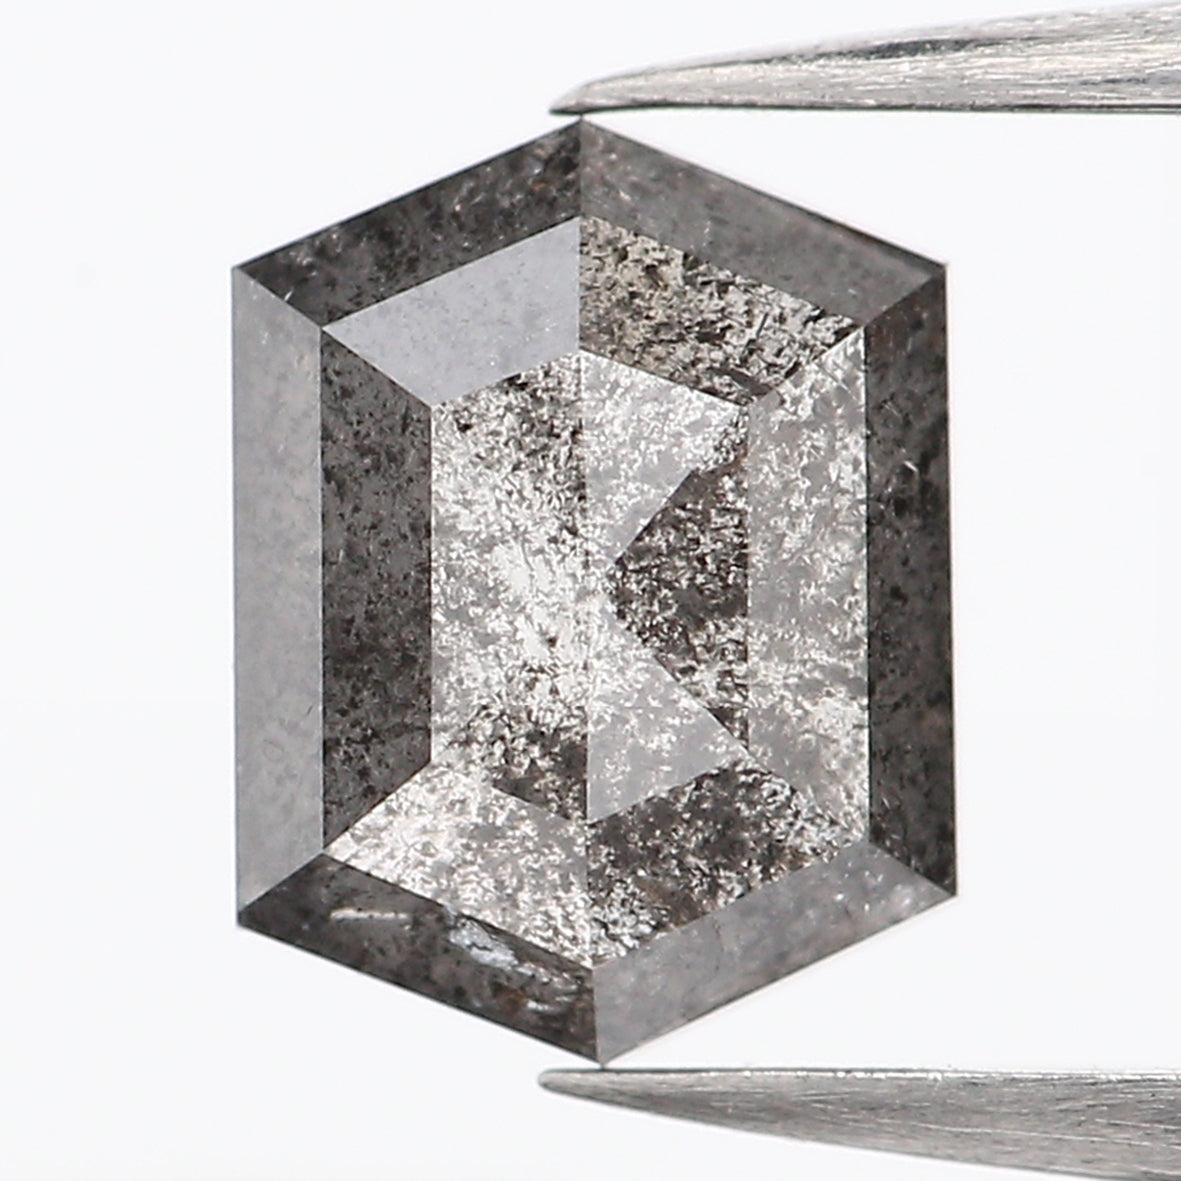 0.59 CT Natural Loose Hexagon Cut Diamond Salt And Pepper Hexagon Diamond 5.85 MM Natural Loose Black Grey Color Hexagon Cut Diamond QL935